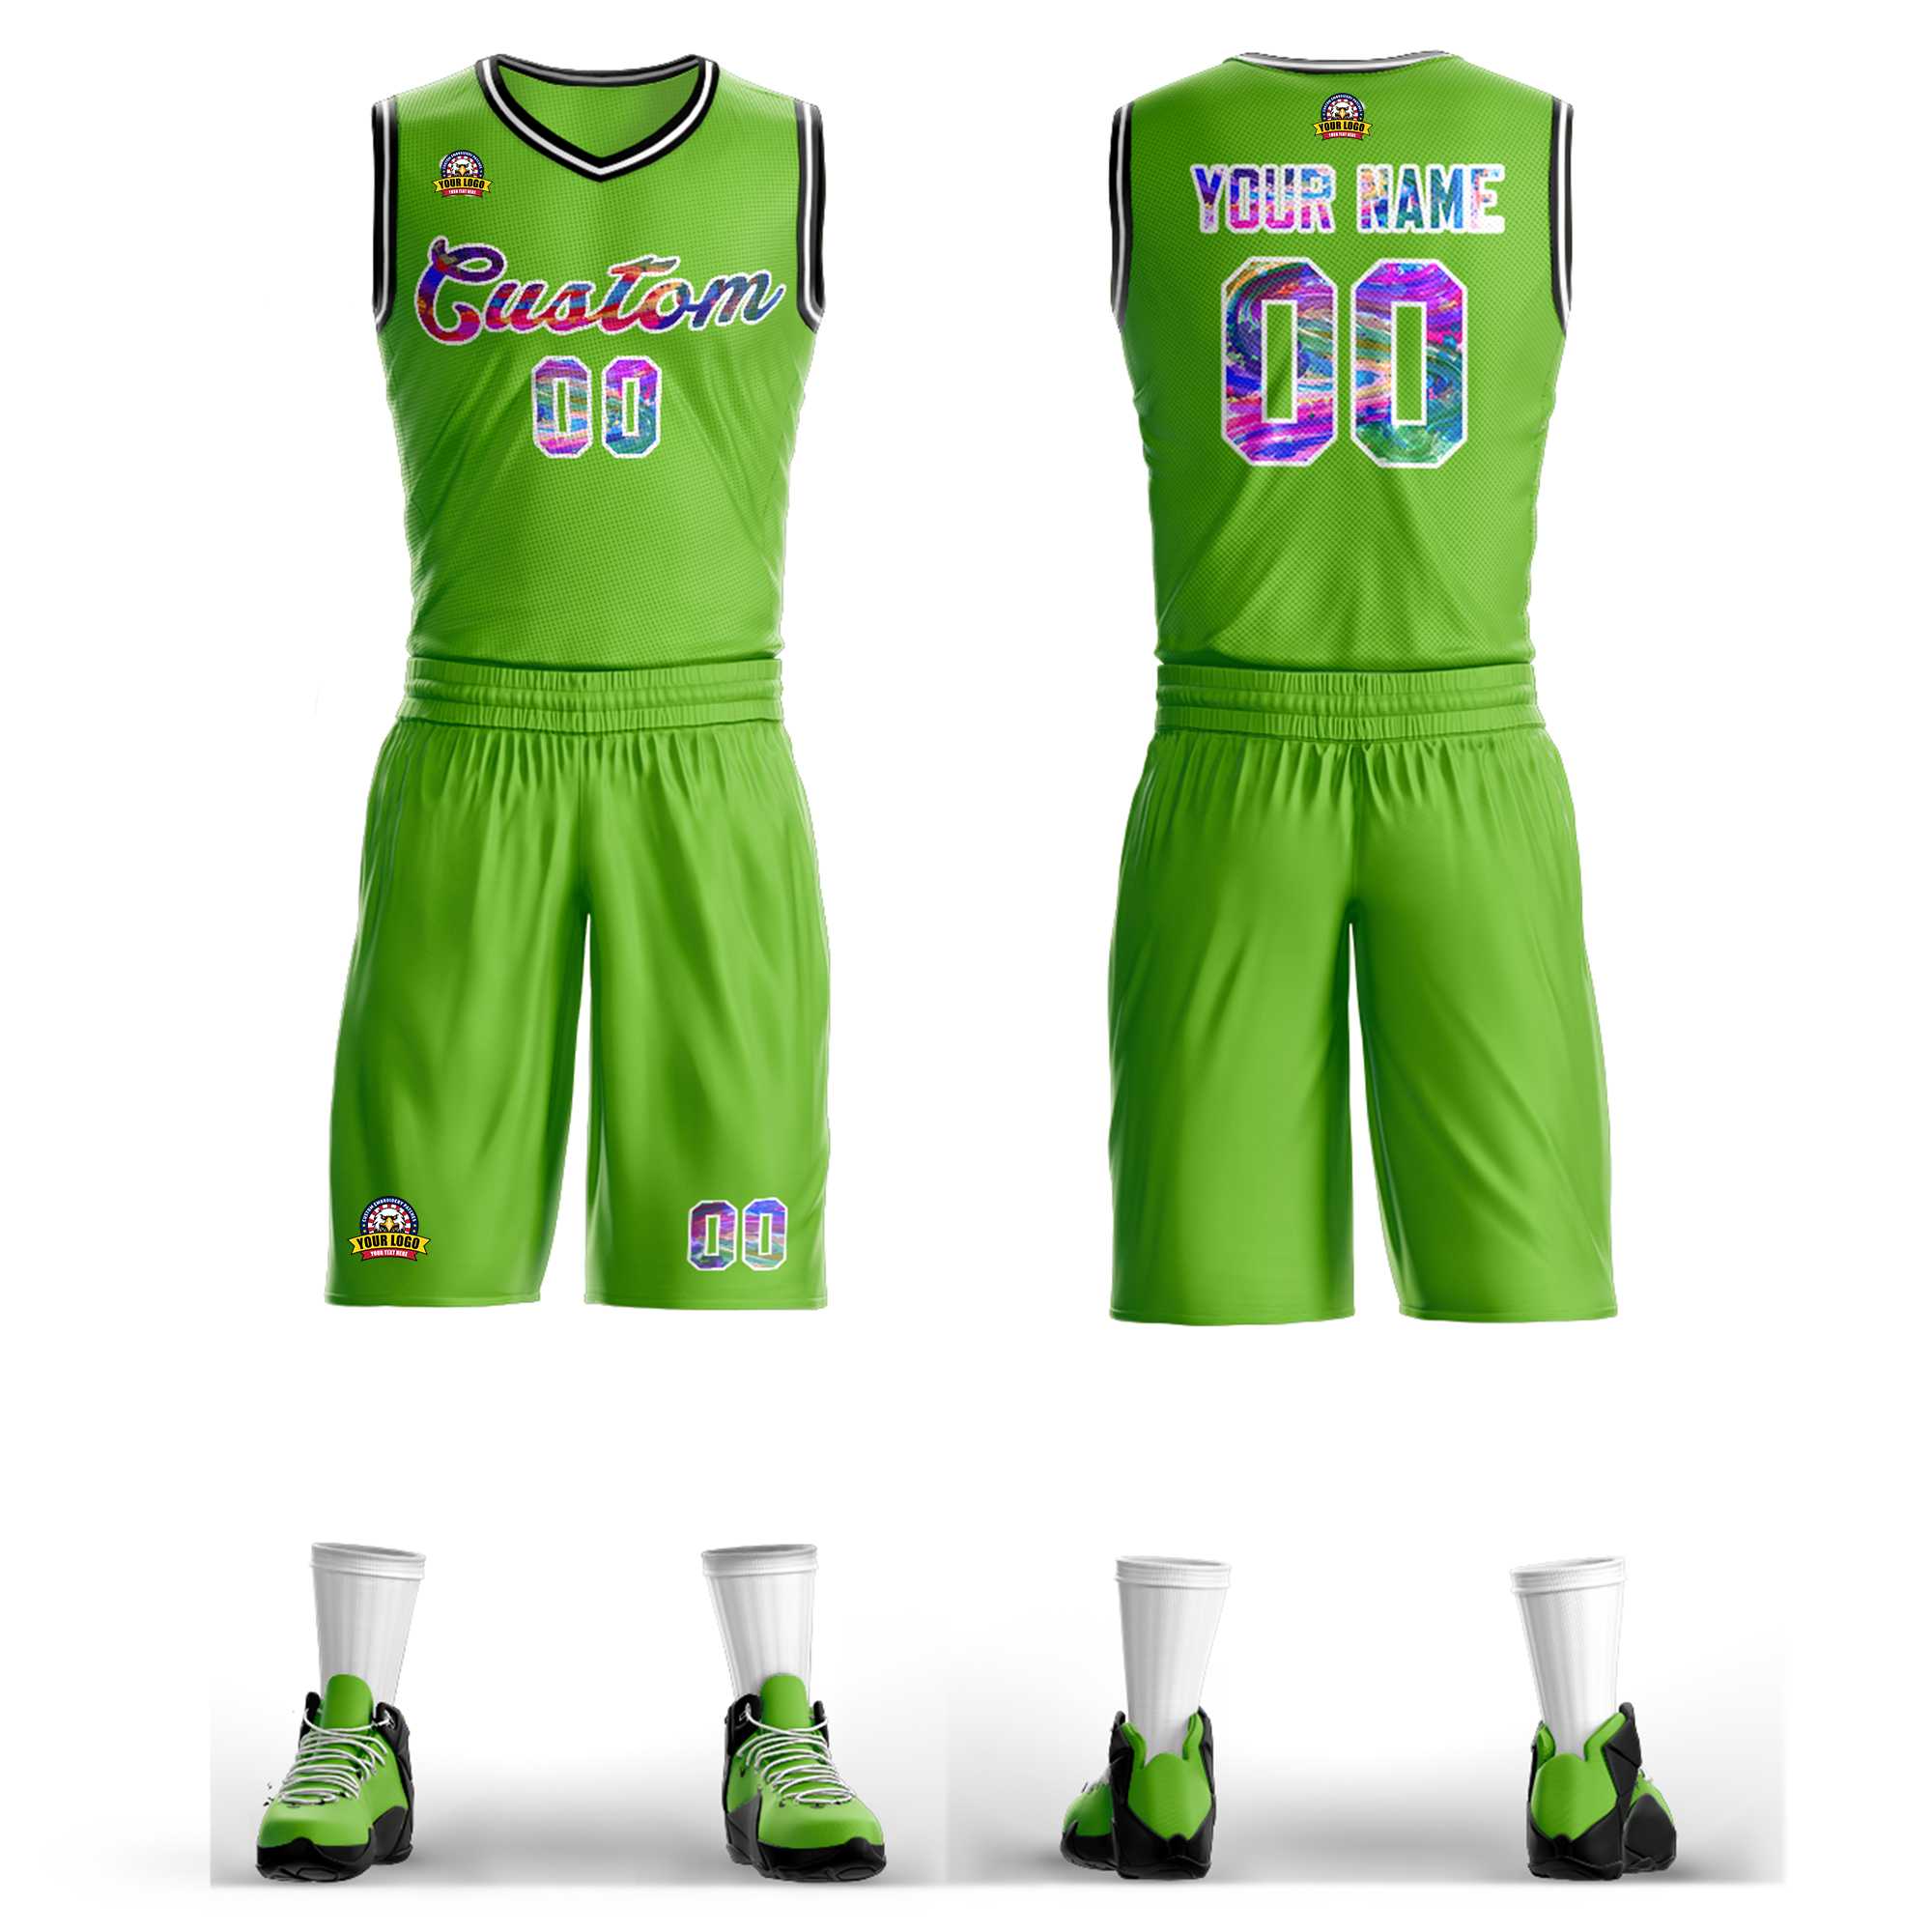 KXK Custom White Green Graffiti Pattern Sets Basketball Jersey